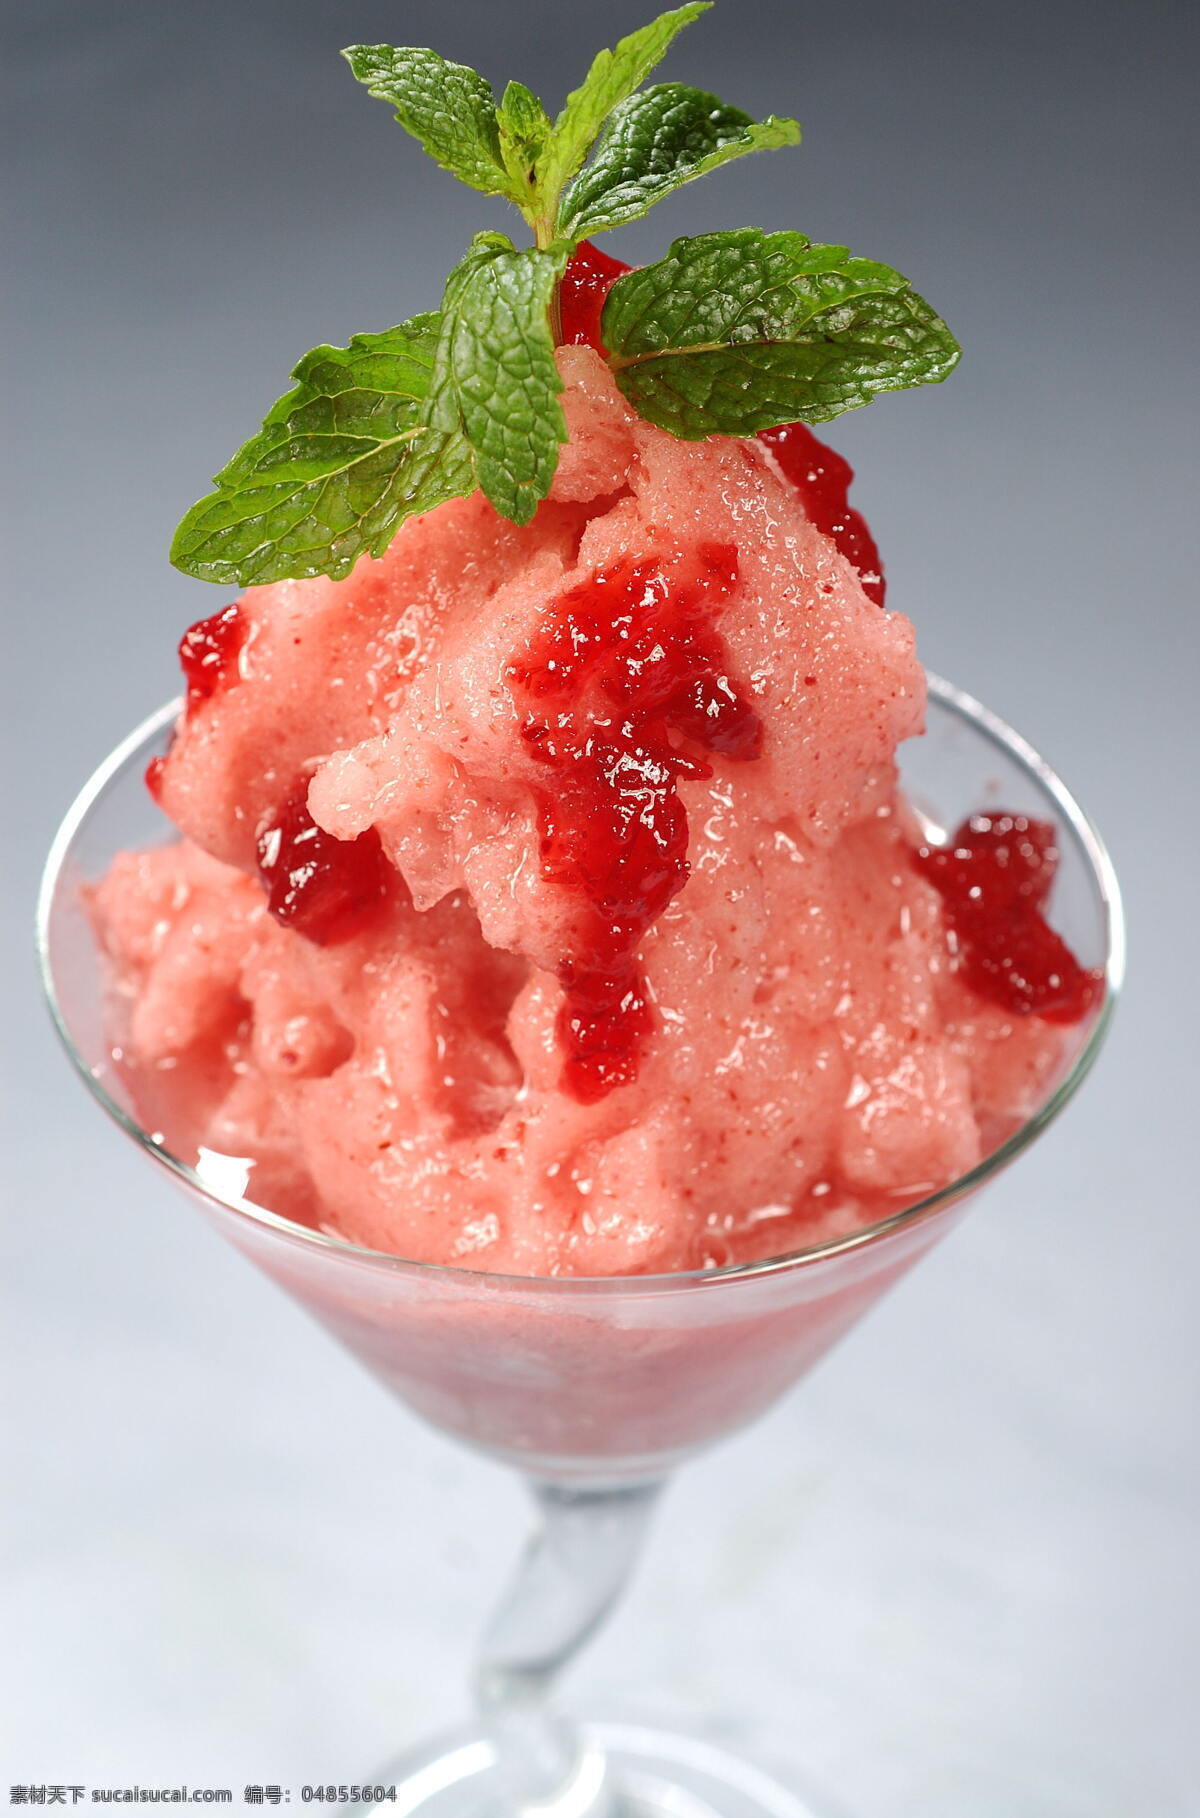 蔓越莓沙冰 沙冰 草莓 水果沙冰 高清沙冰图片 饮料酒水 餐饮美食